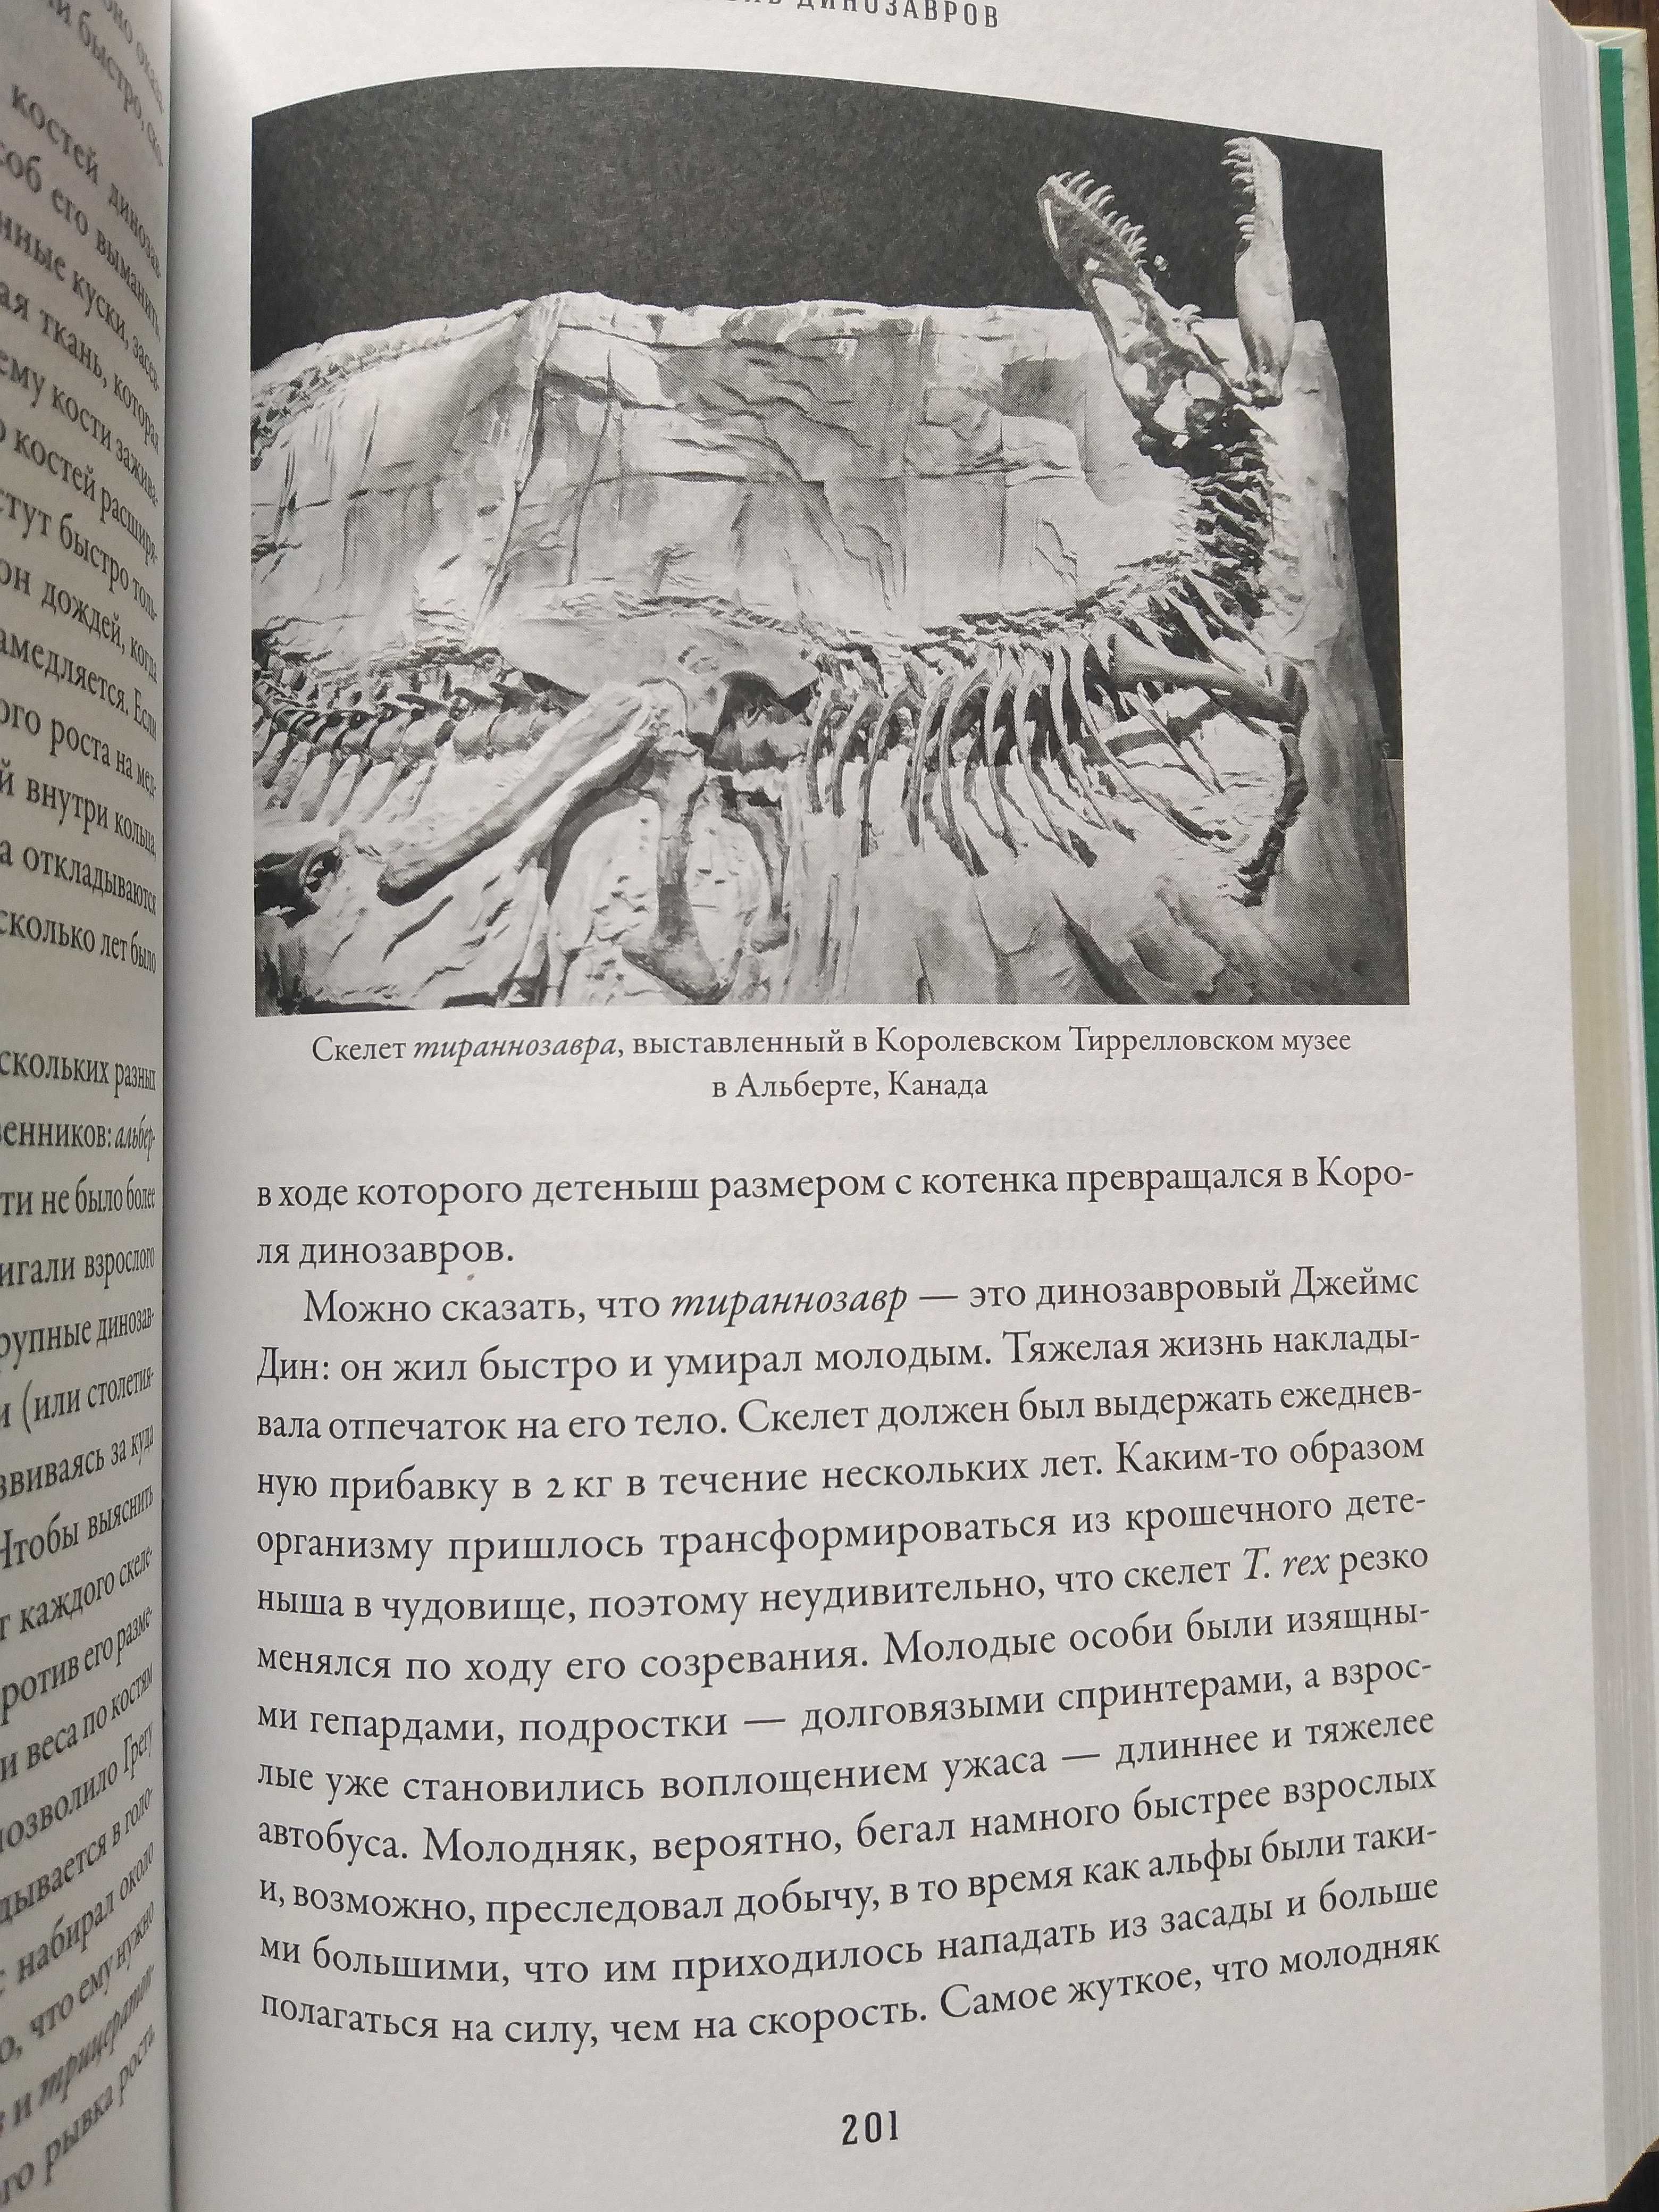 Стив Брусатти. "Время динозавров. Новая история древних ящеров".